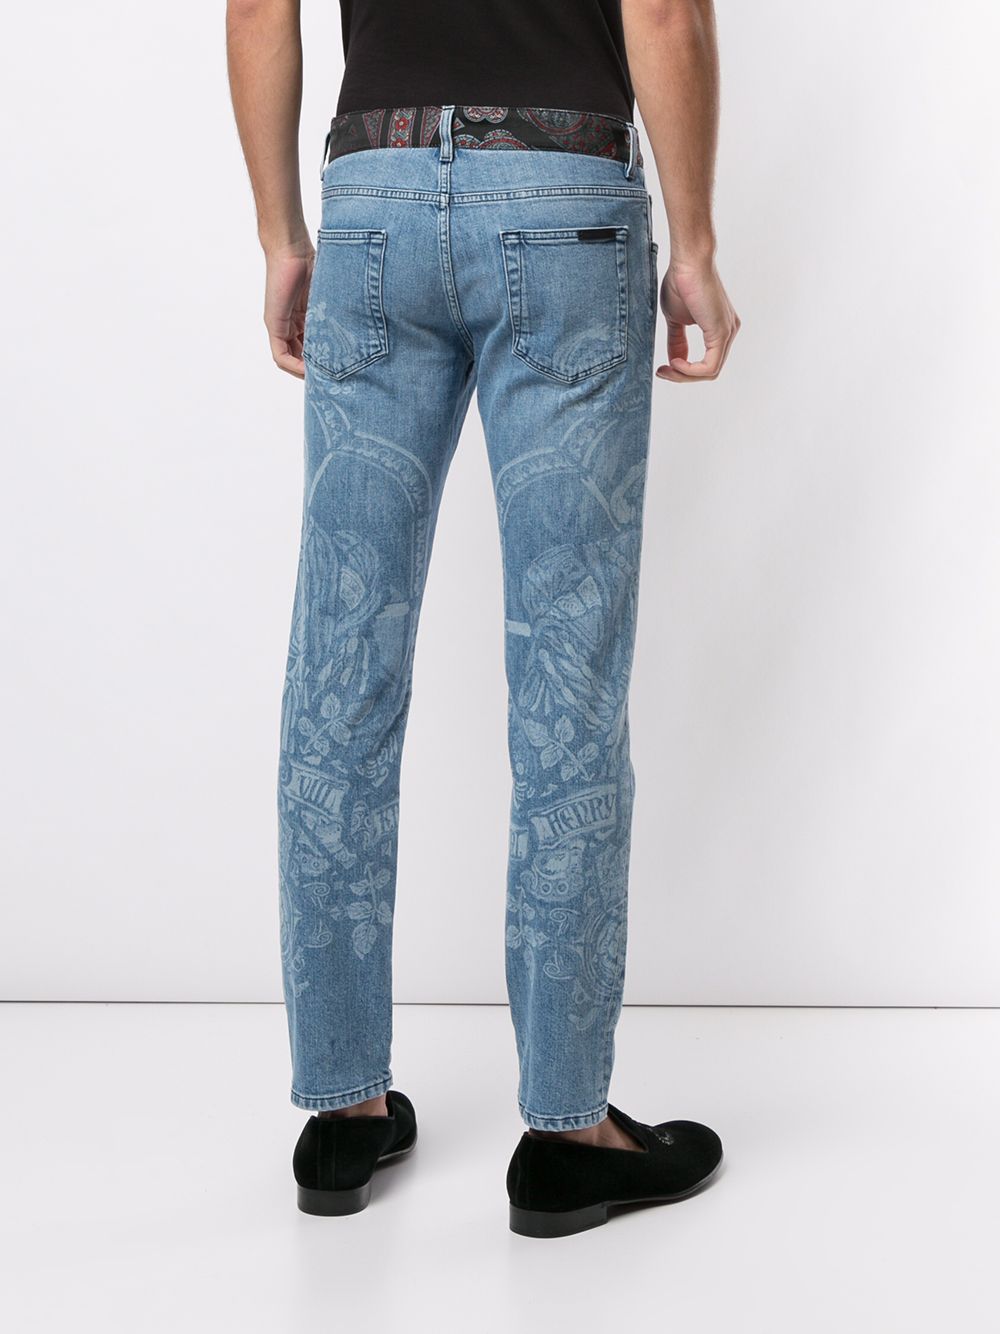 фото Dolce & gabbana джинсы кроя слим с принтом henry viii